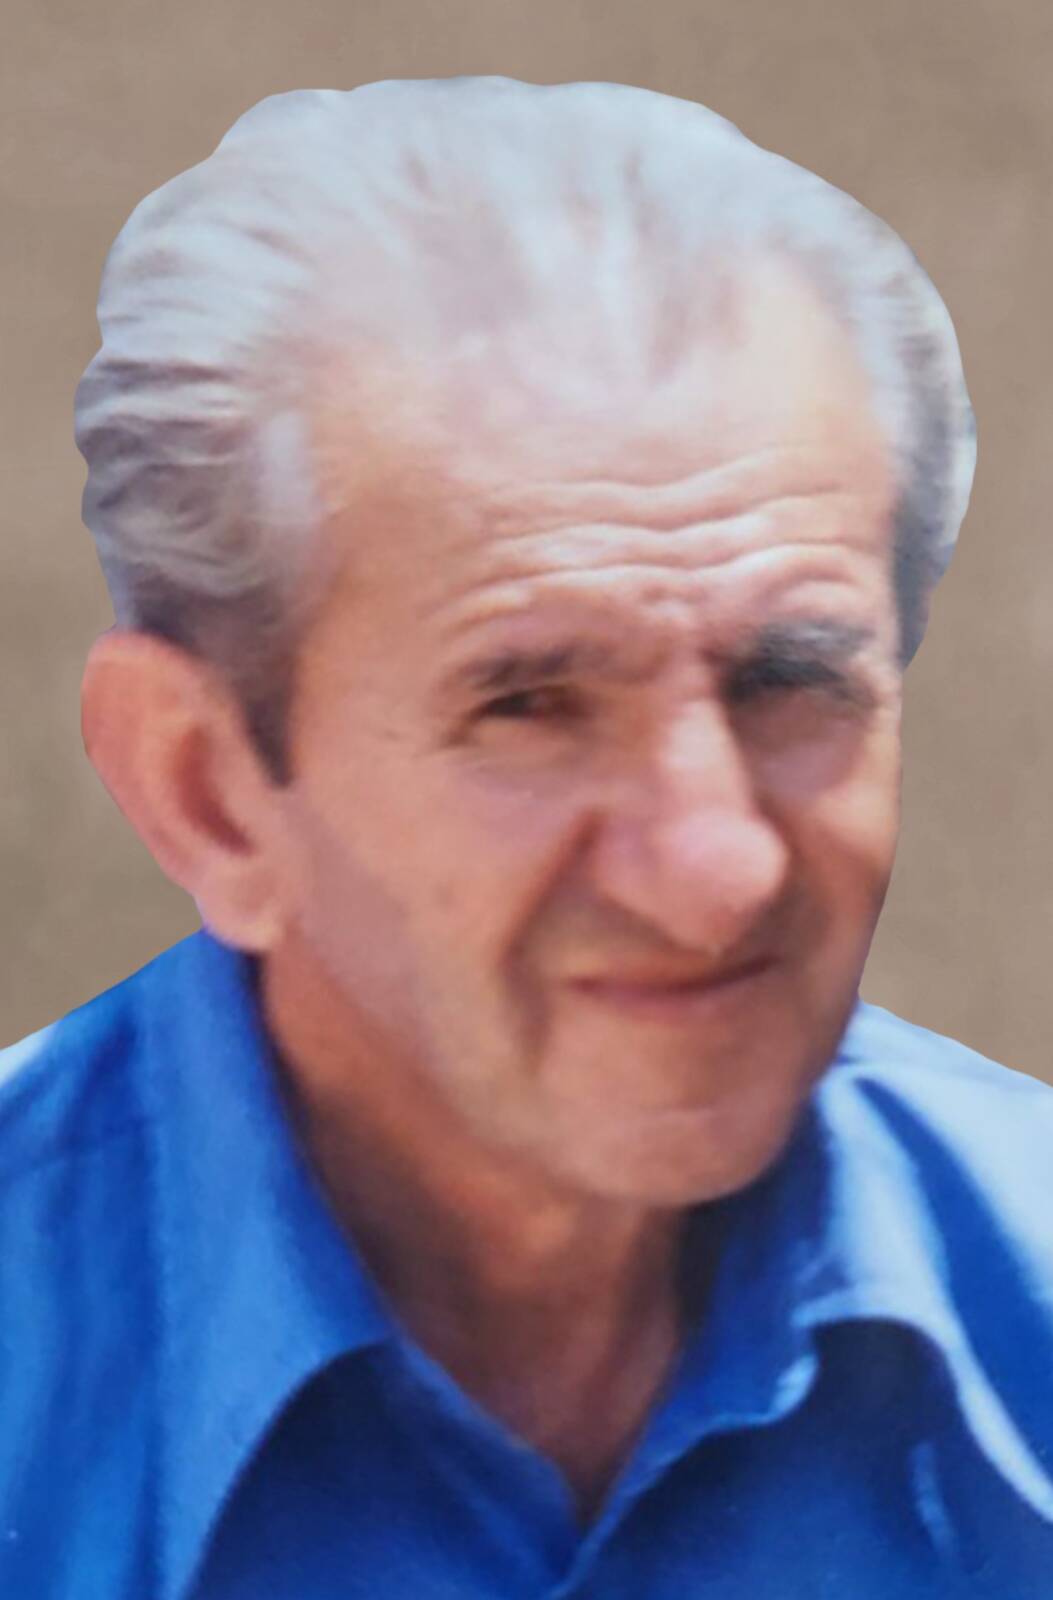 Έφυγε από την ζωή ο Νικόλαος Τσαγγαδάς σε ηλικία 92 ετών – Η κηδεία θα τελεστεί την Πέμπτη 27 Ιουλίου